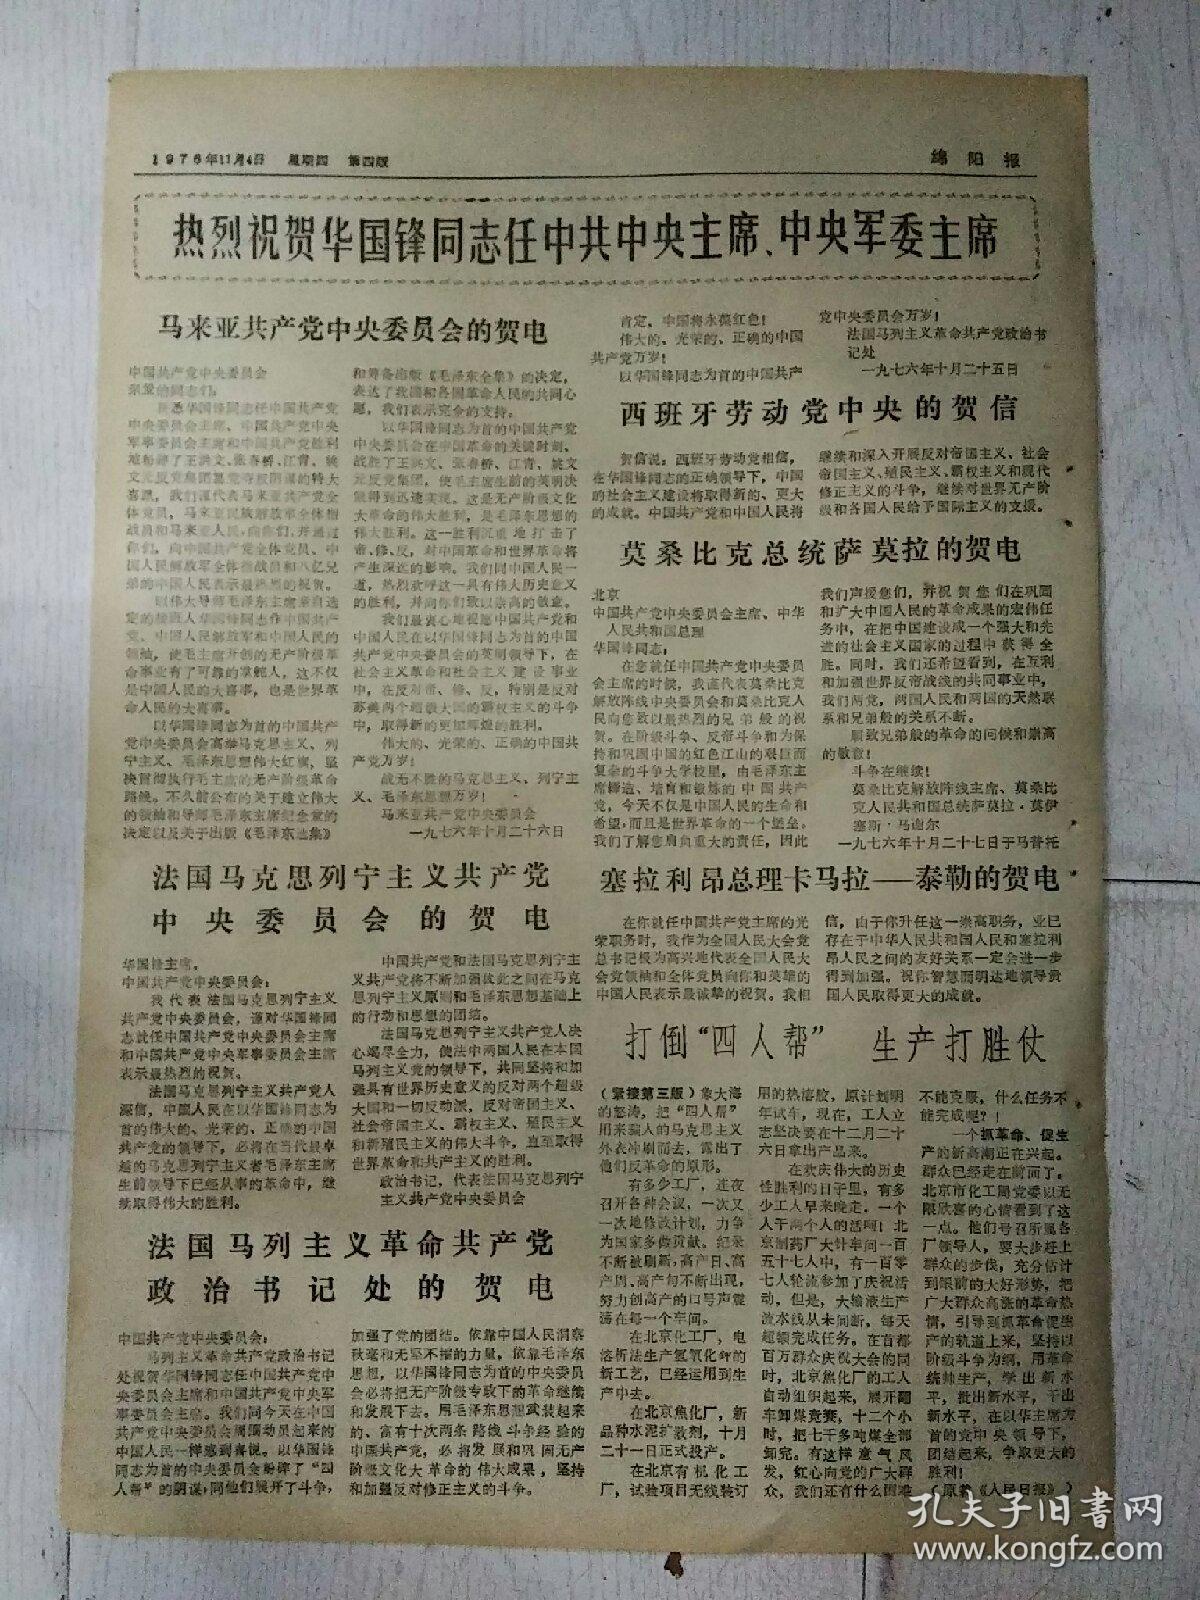 生日报绵阳报1976年11月4日（8开四版）
华国锋主席电贺阿尔巴尼亚劳动党第七次代表大会；
马来亚共产党中央委员会的贺电；